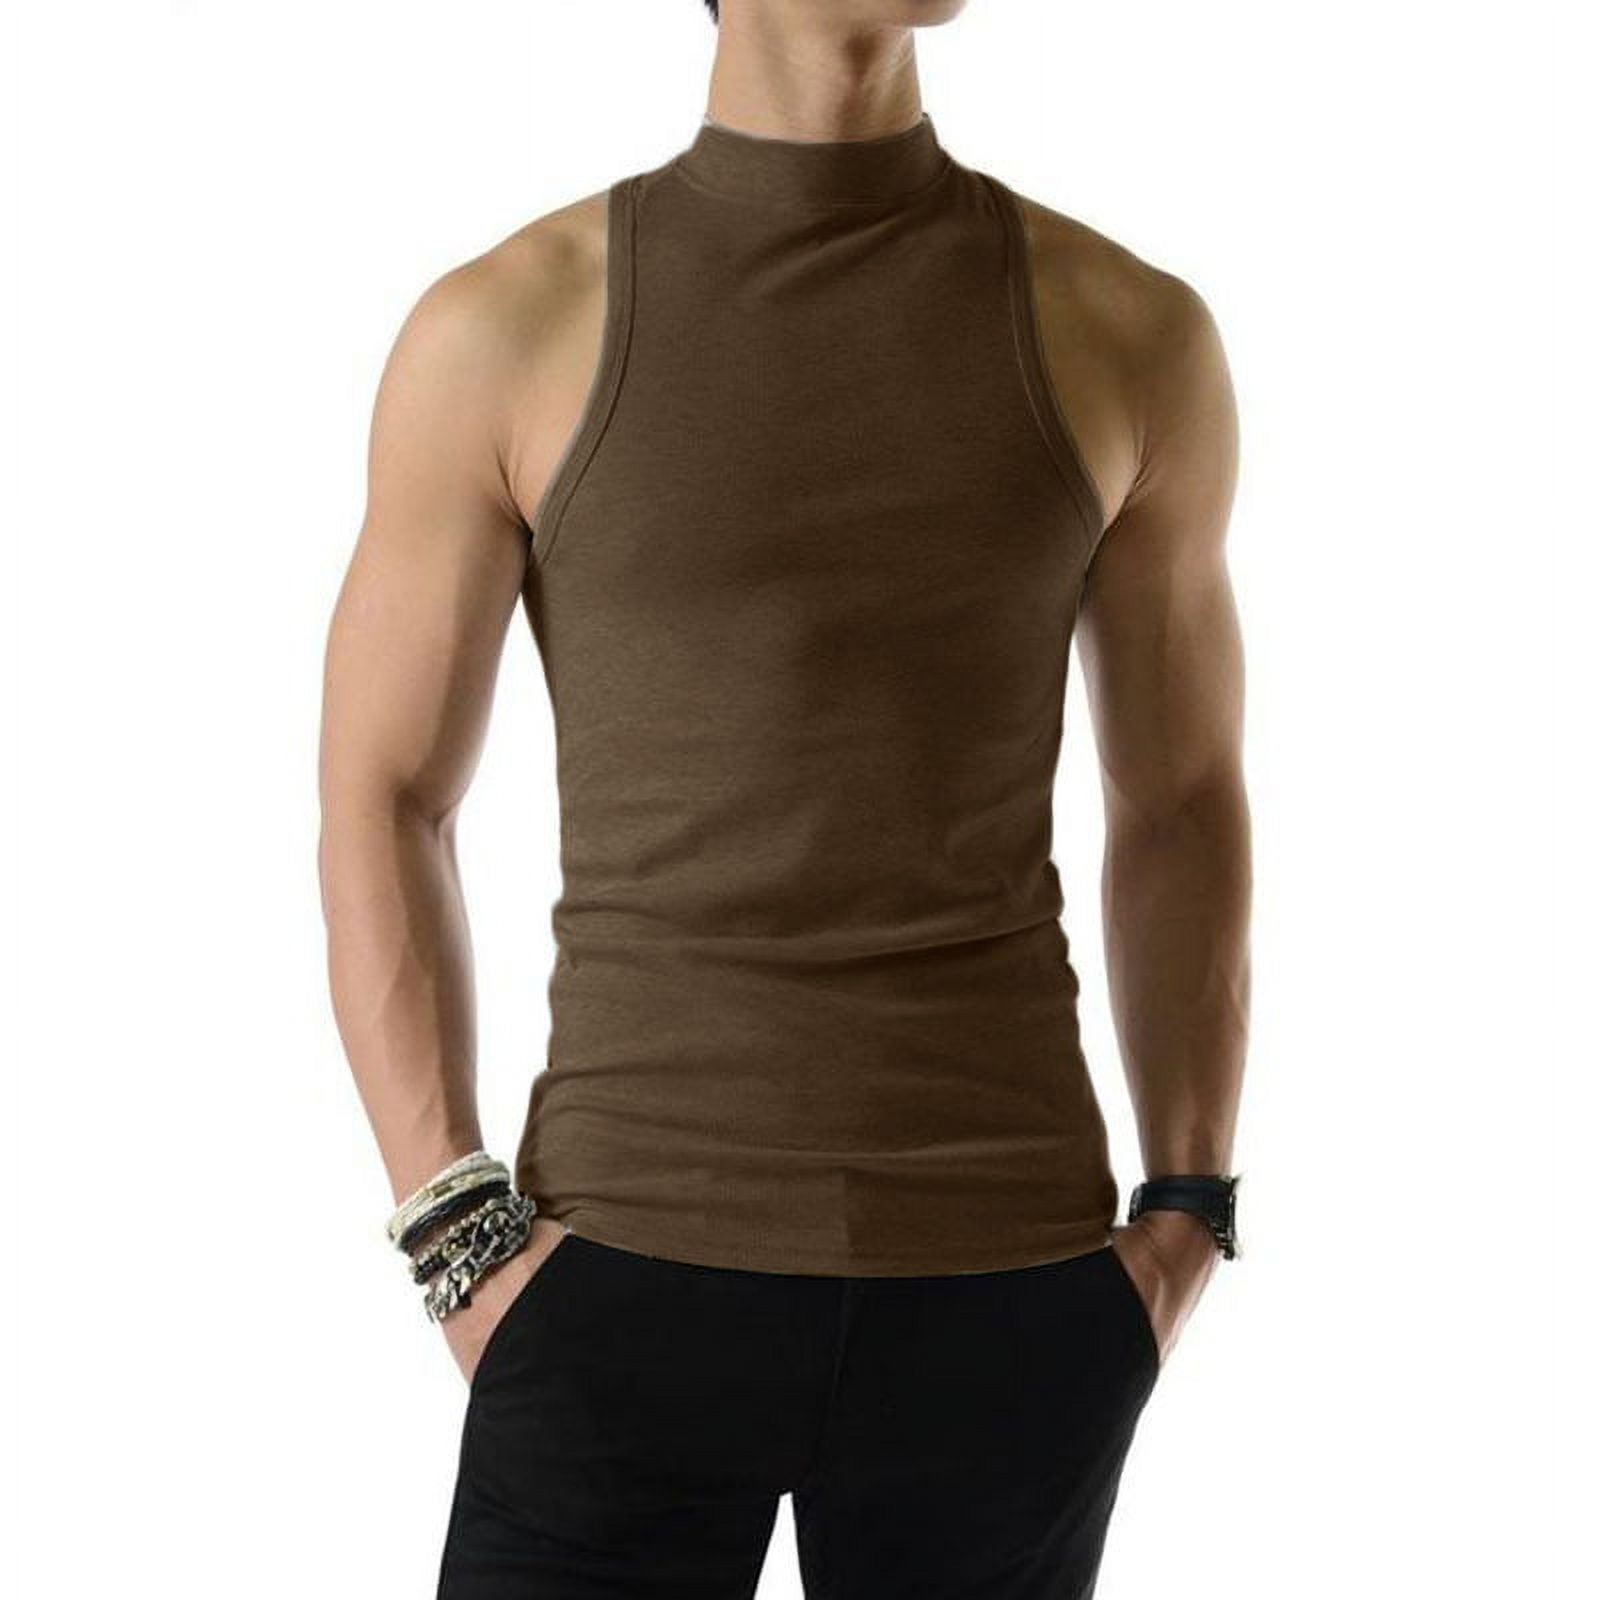 INCERUN Men's Sleeveless Vest Slim Fit Solid Color Half-collar Gym